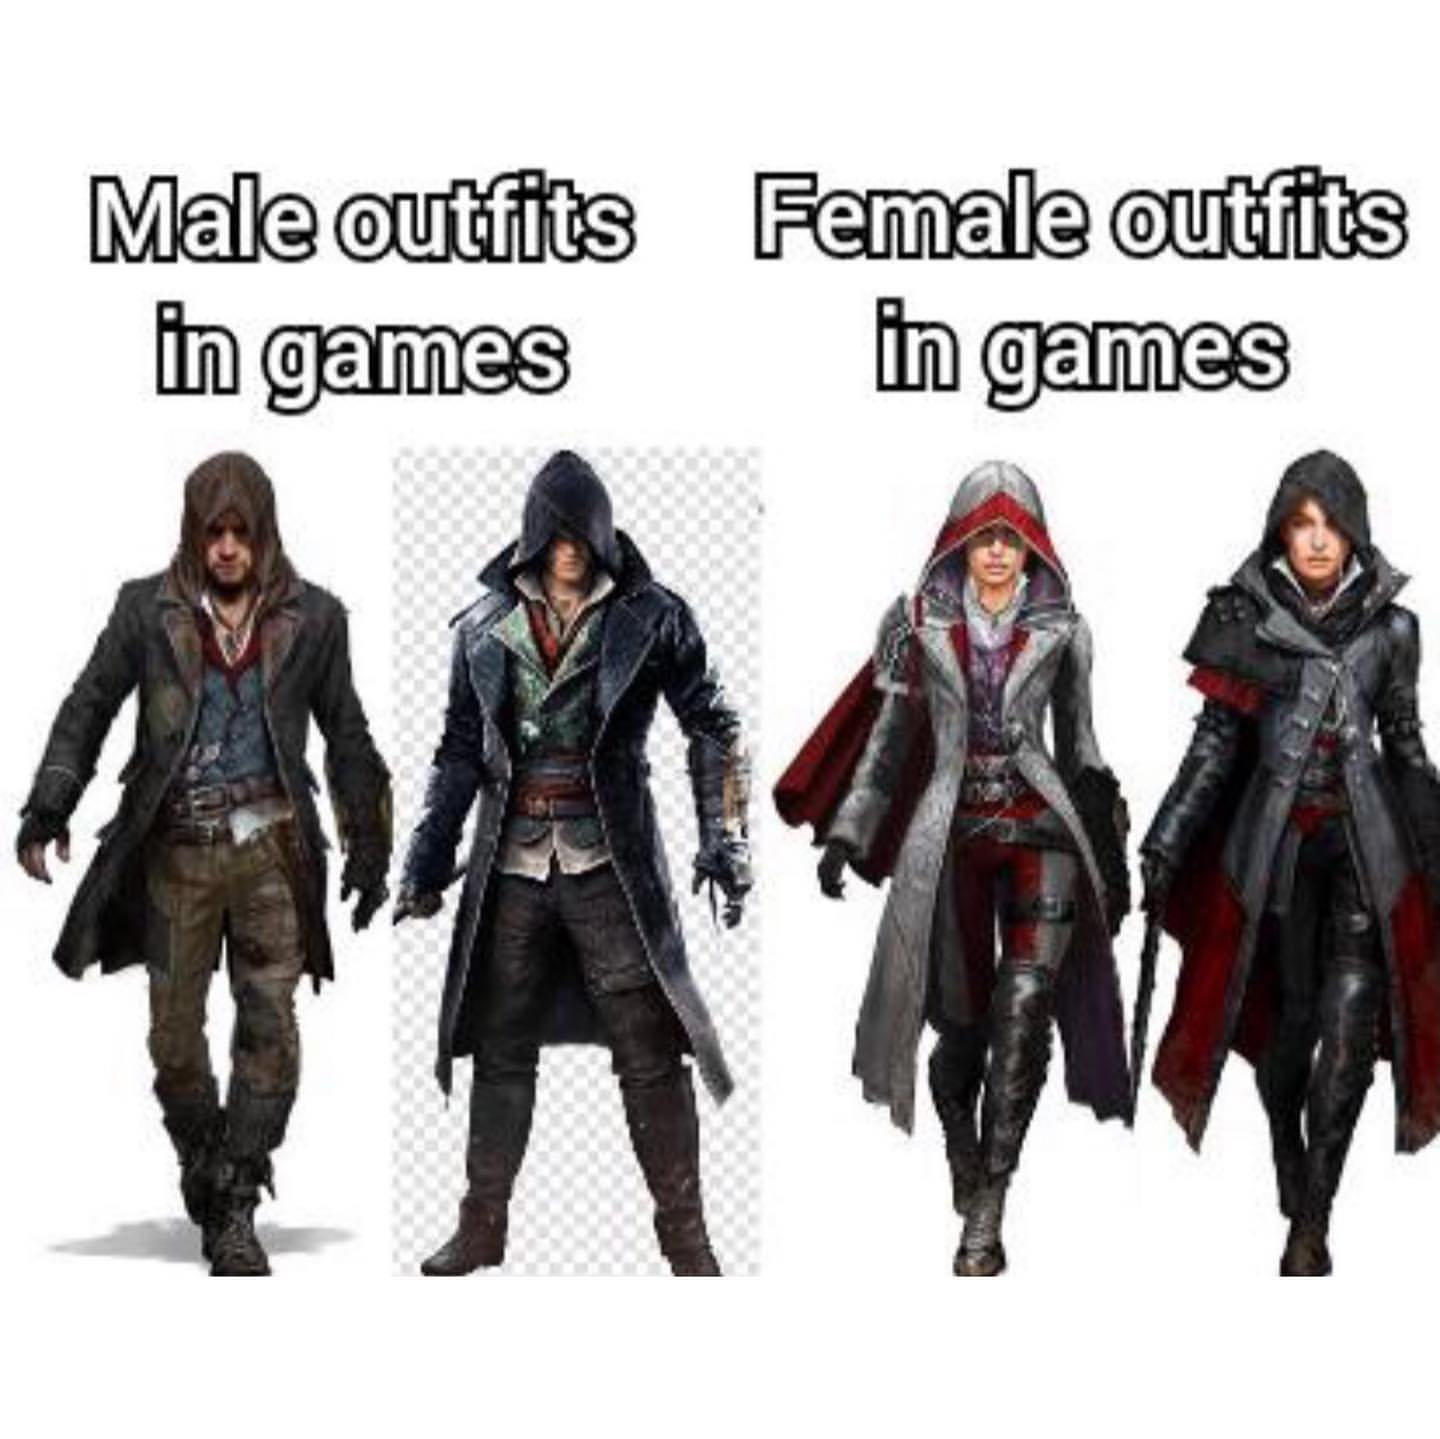 Male outfits in games. Female outfits in games.